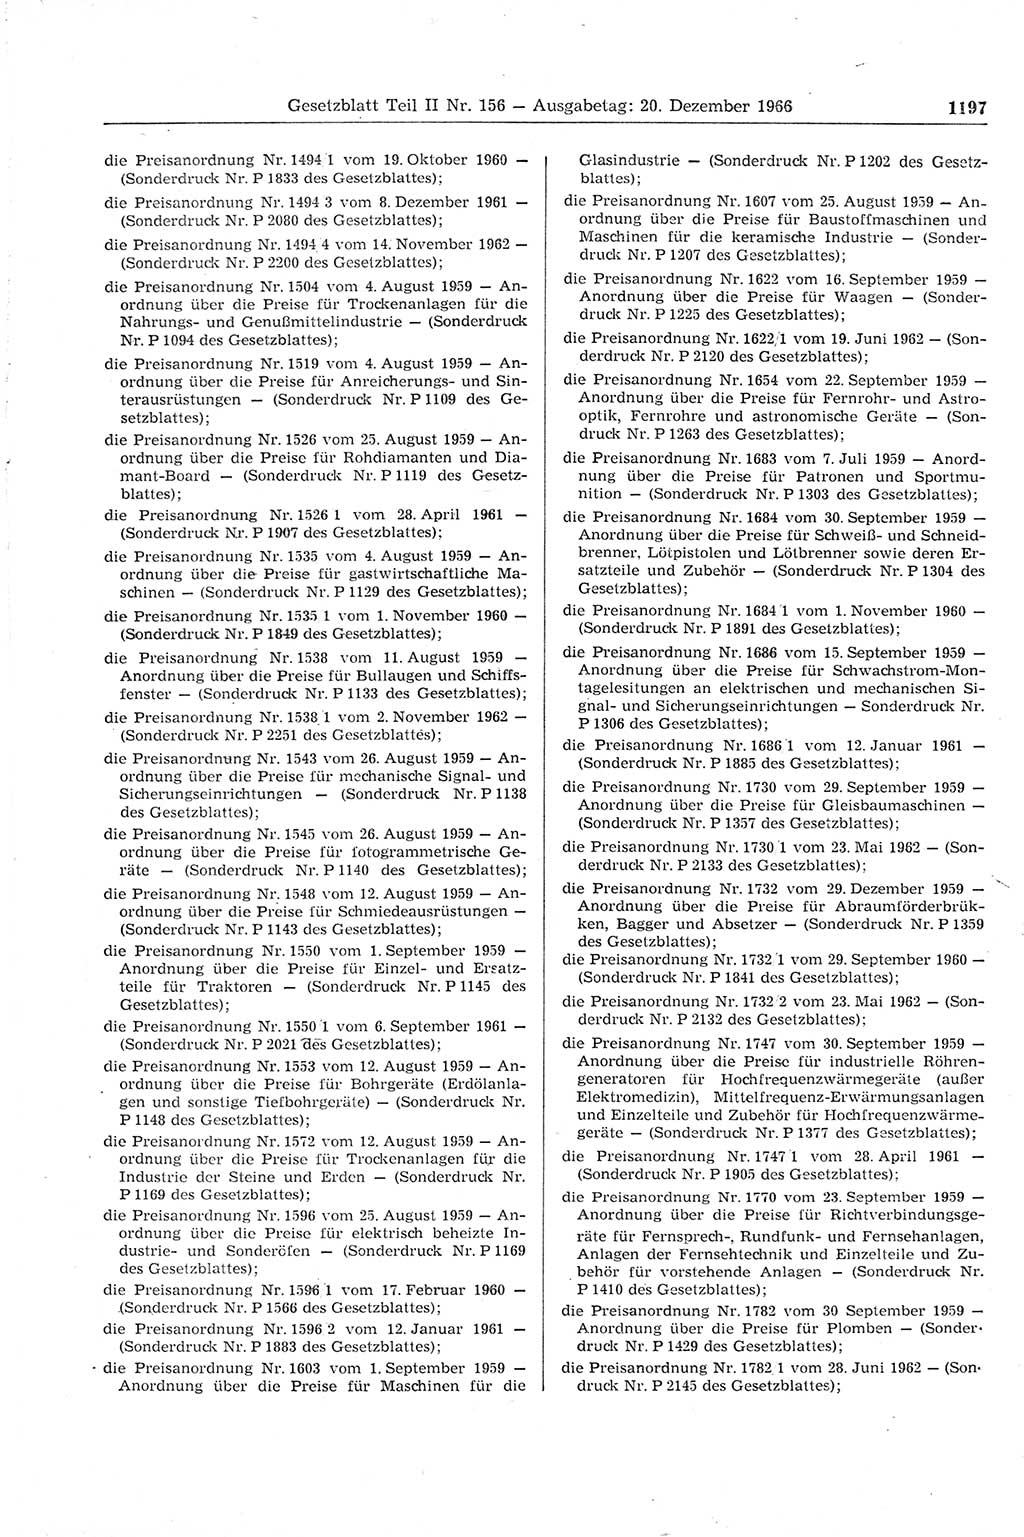 Gesetzblatt (GBl.) der Deutschen Demokratischen Republik (DDR) Teil ⅠⅠ 1966, Seite 1197 (GBl. DDR ⅠⅠ 1966, S. 1197)